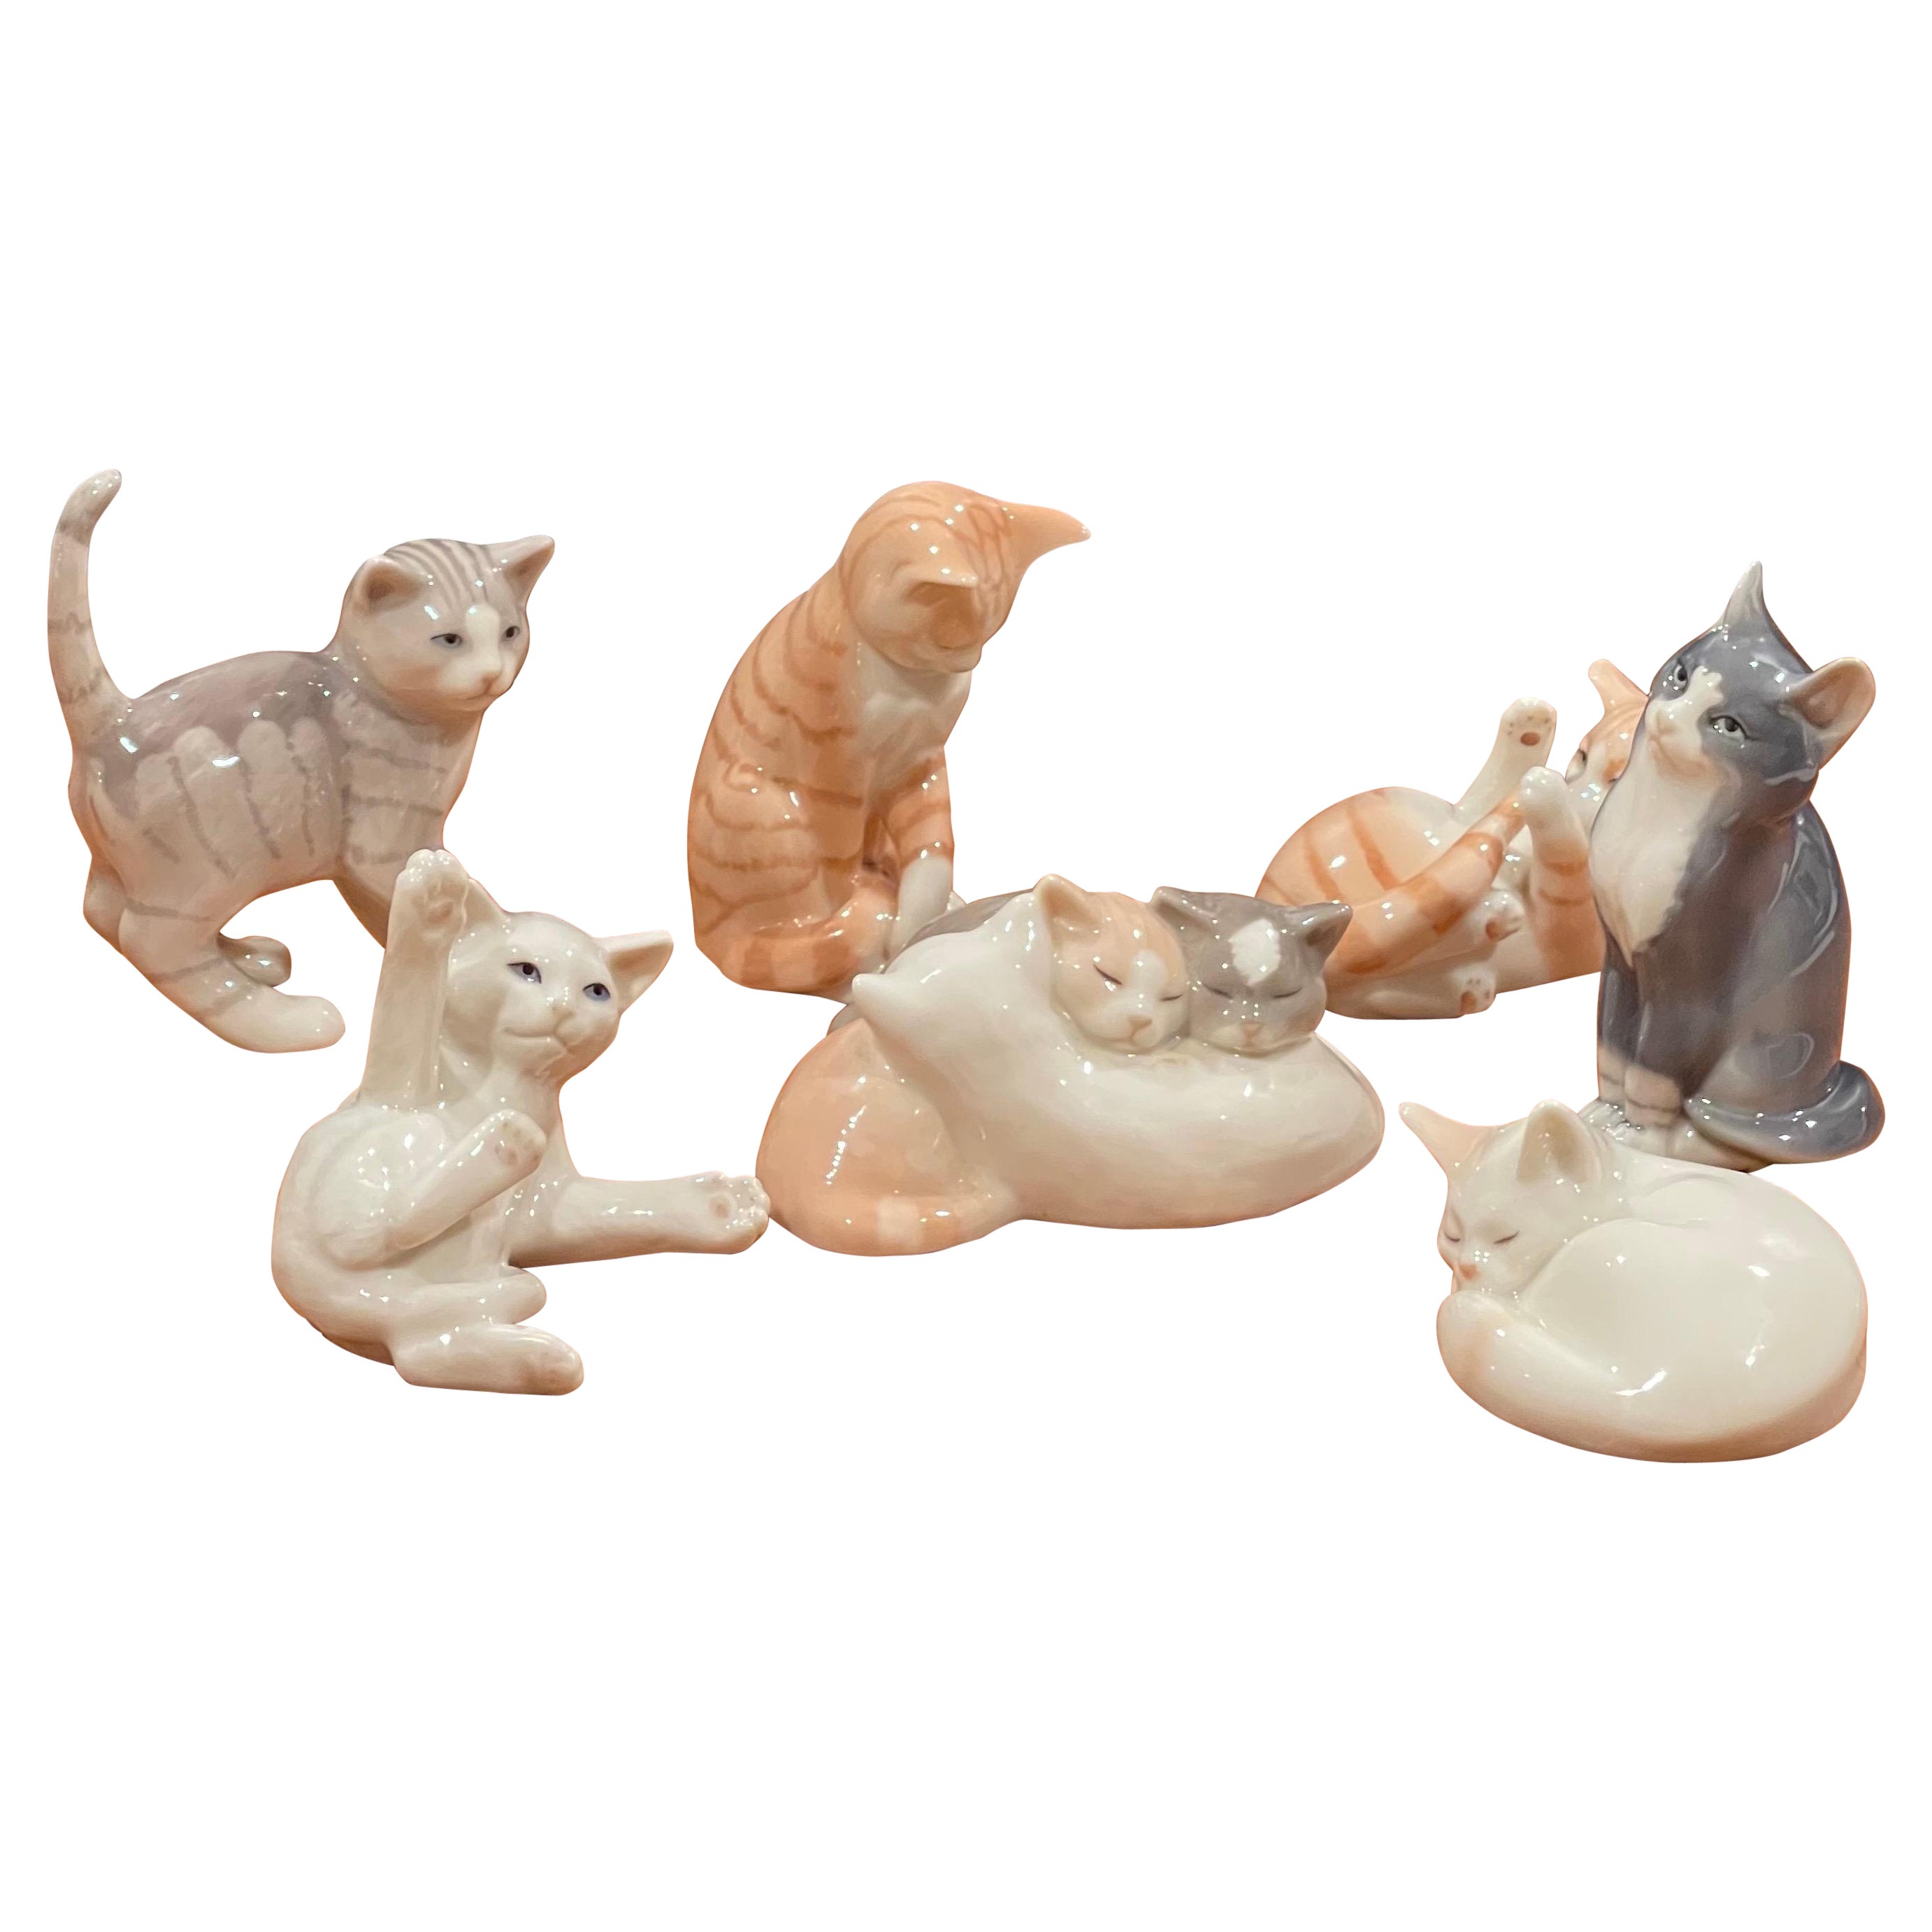 Sammlung von sieben Miniatur-Porzellan-Katzenskulpturen von Royal Copenhagen